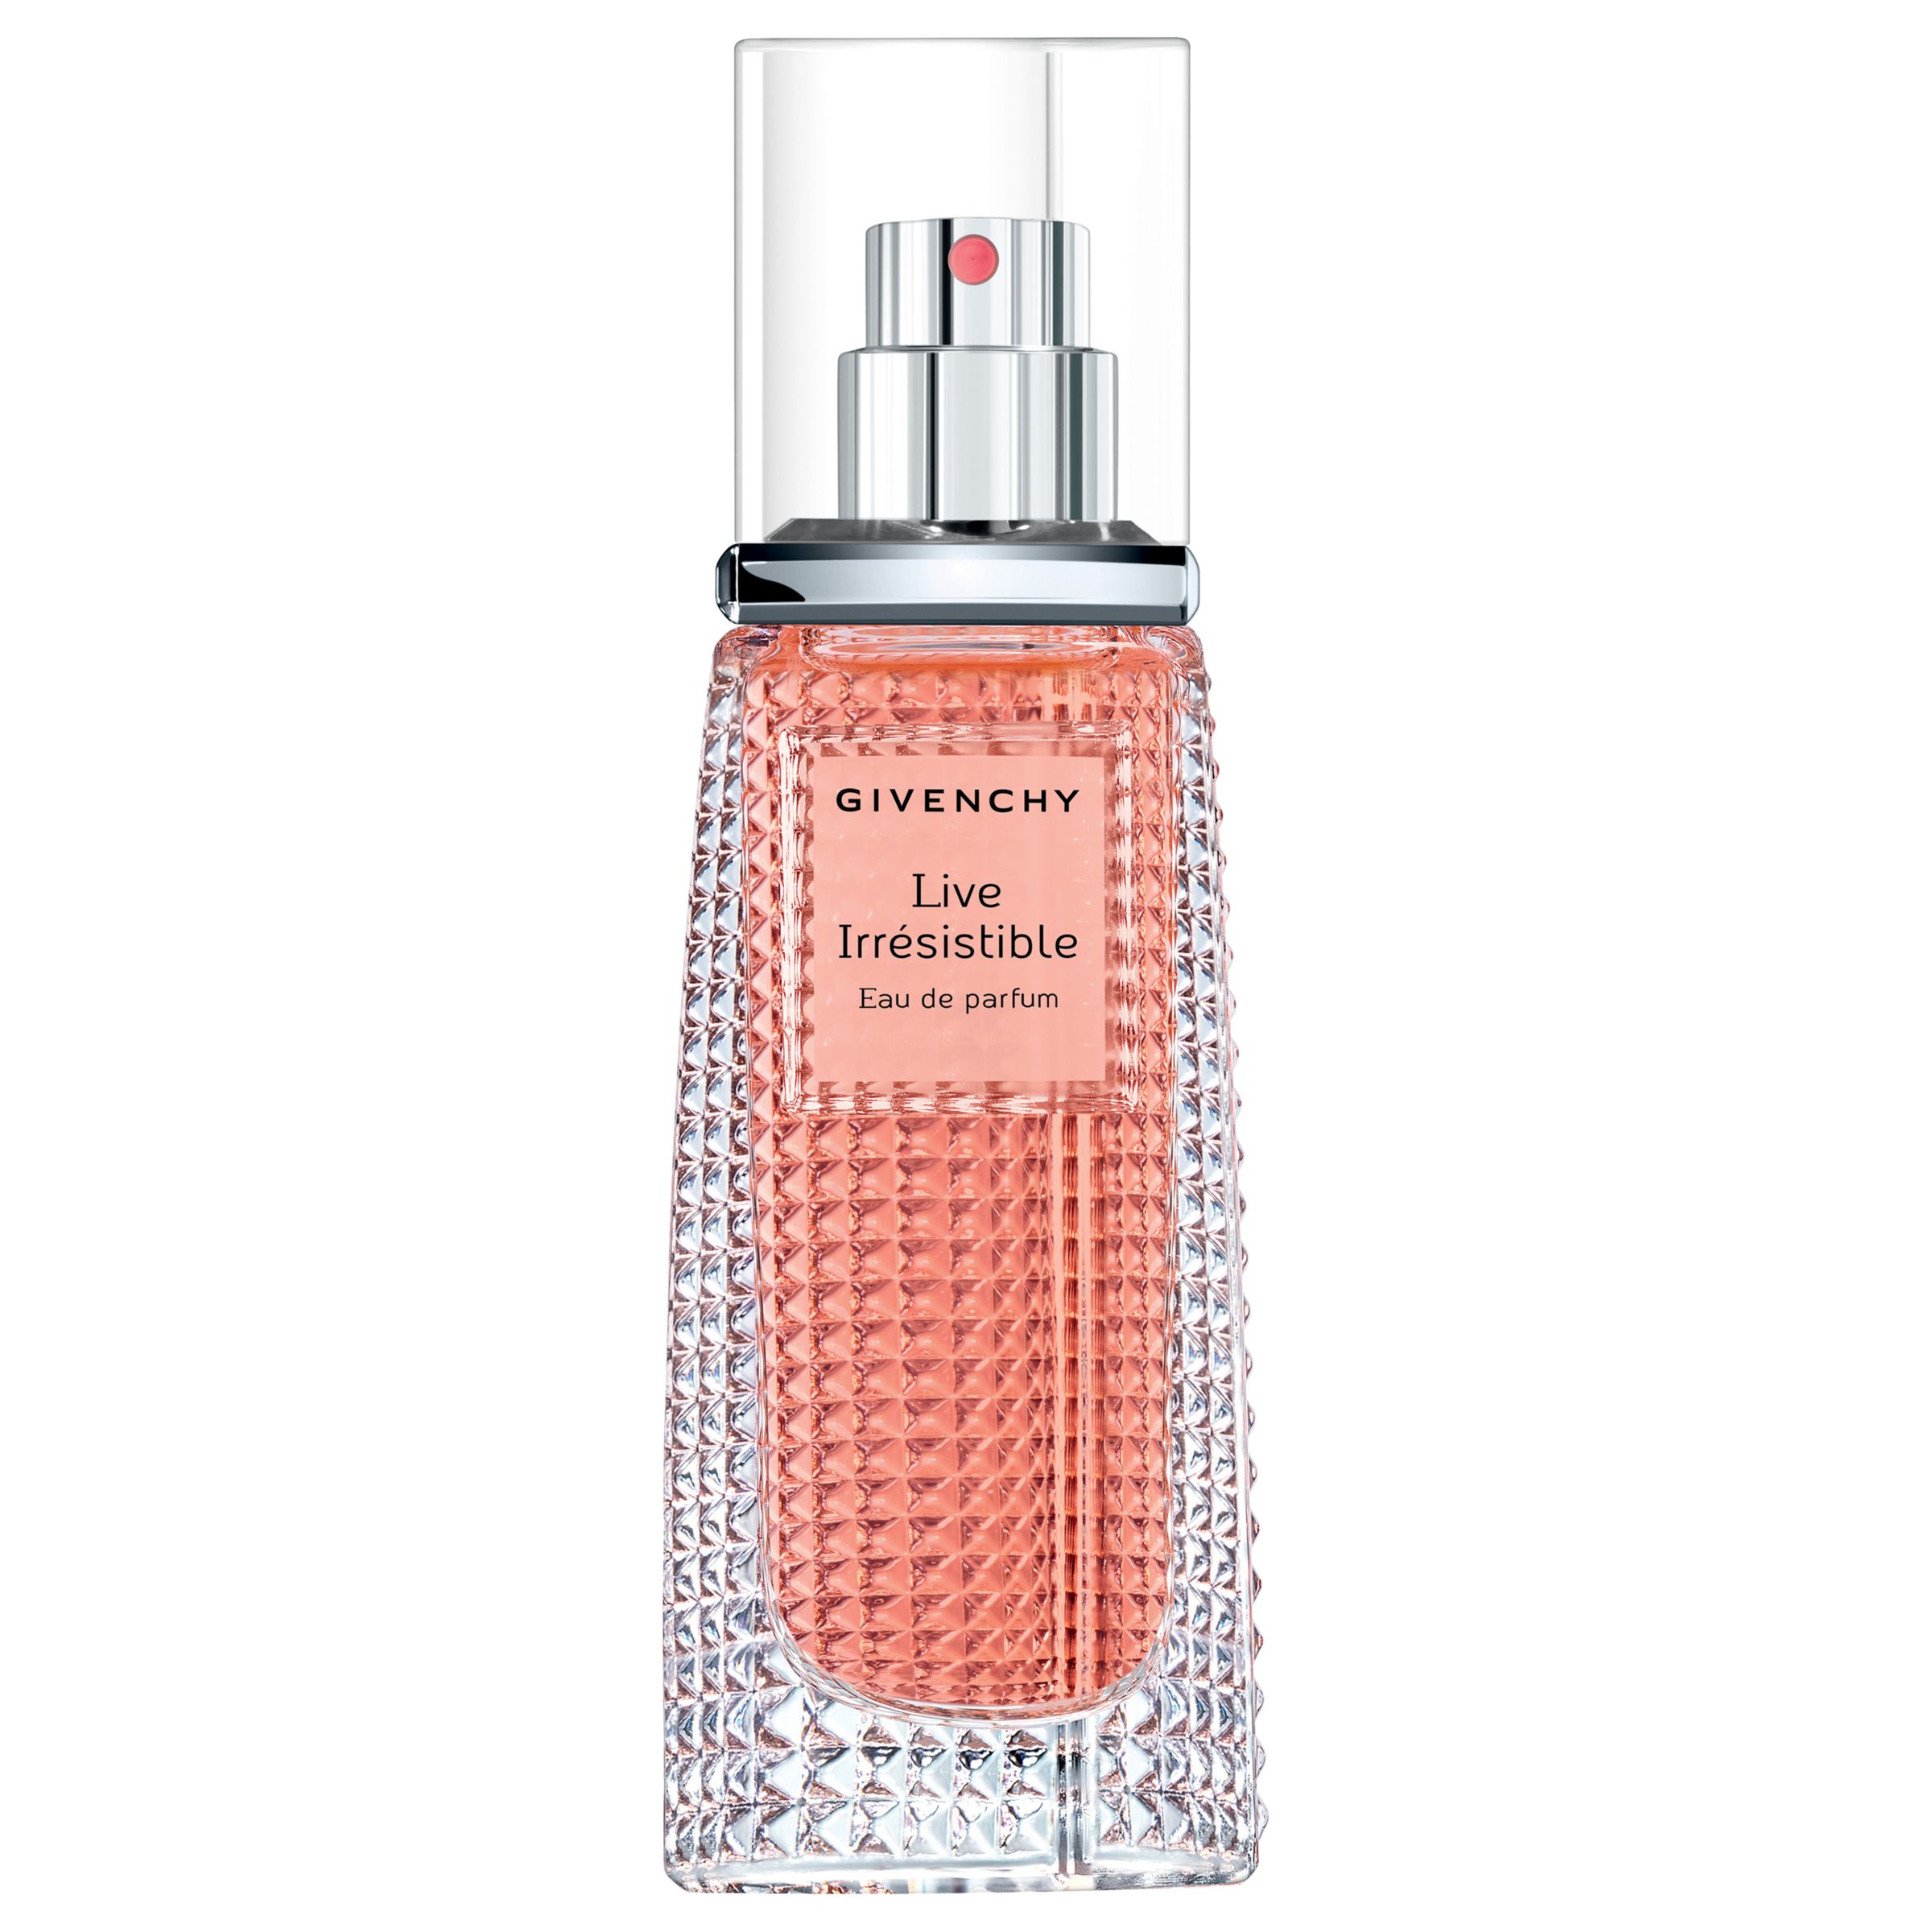 Givenchy Live Irrésistible Eau de Parfum, 30ml at John Lewis & Partners